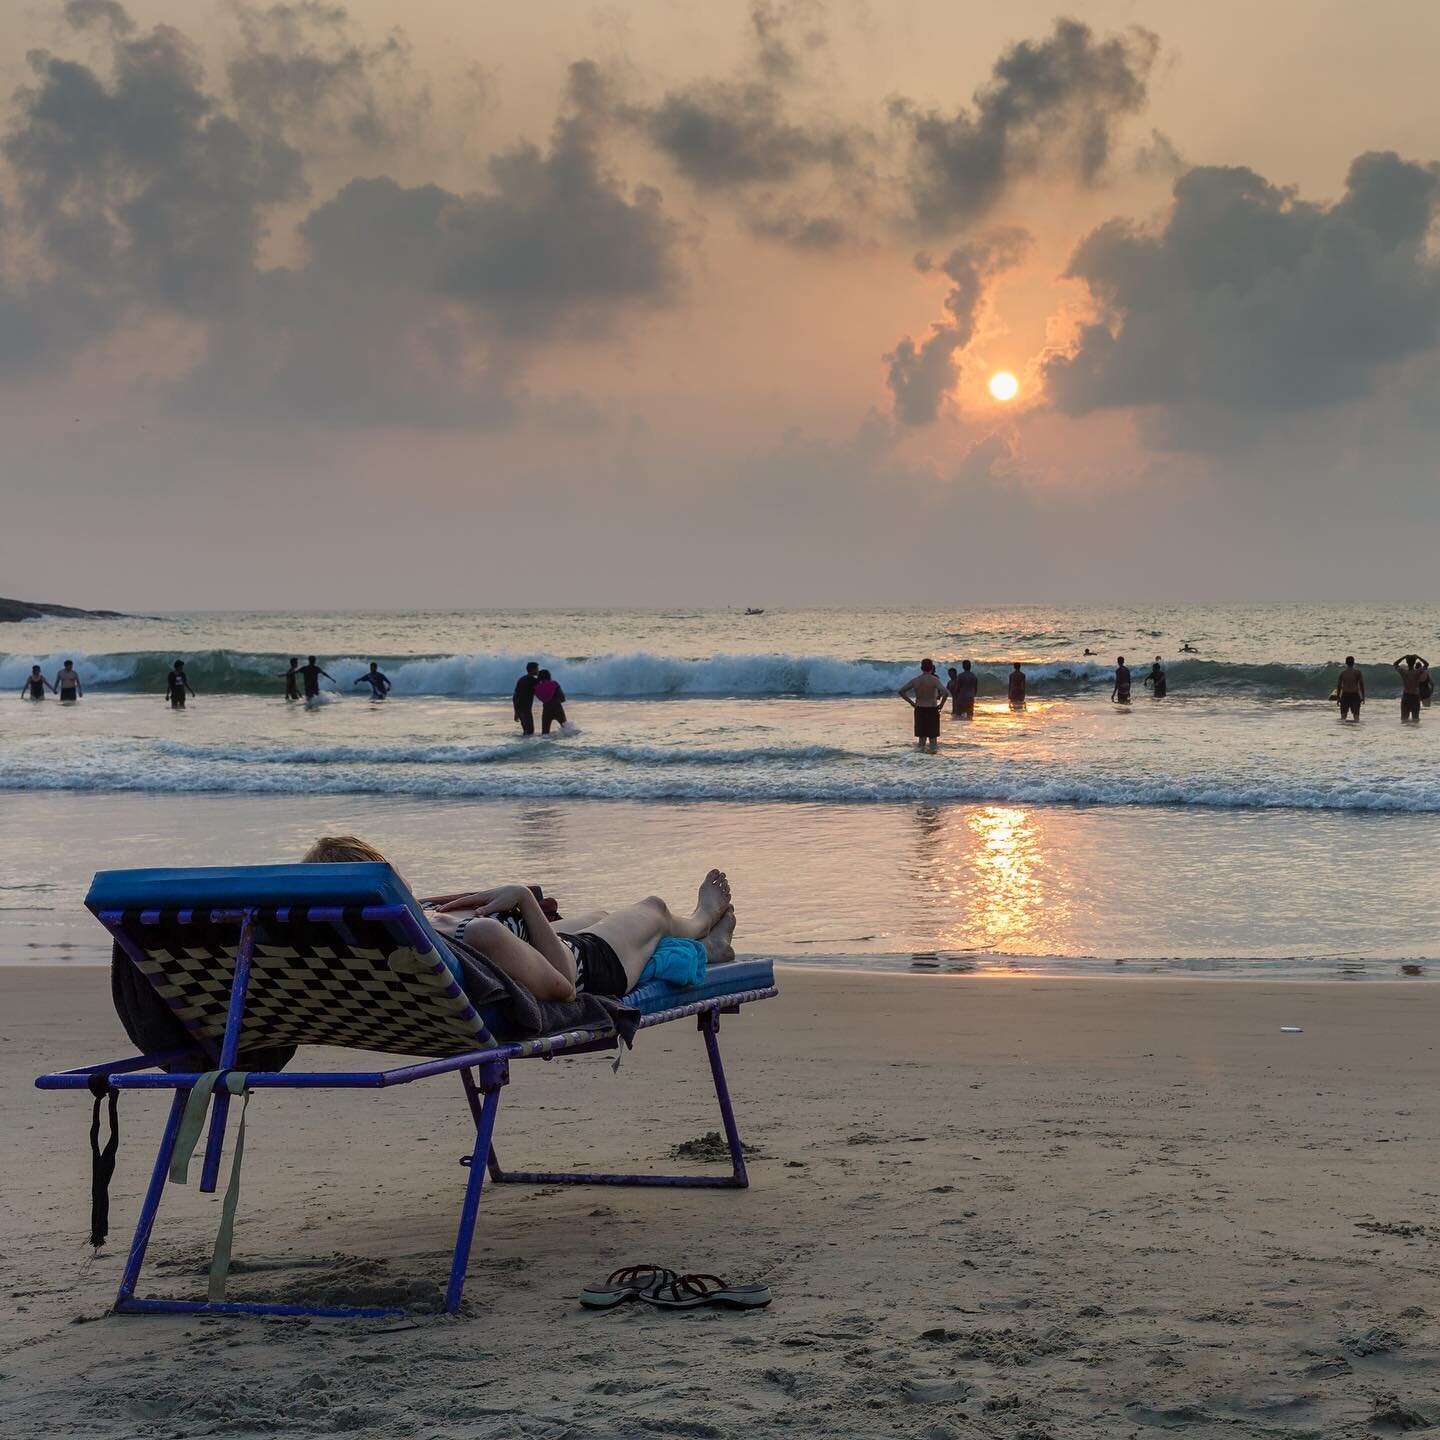 El verano se escapa, la melancolía nos invade... Aunque esta foto la tomamos en la playa de Kovalam en Kerala, al sur de la India,  un enclave turístico, con público mayoritariamente nacional. Allí las estaciones funcionan de forma muy distinta a